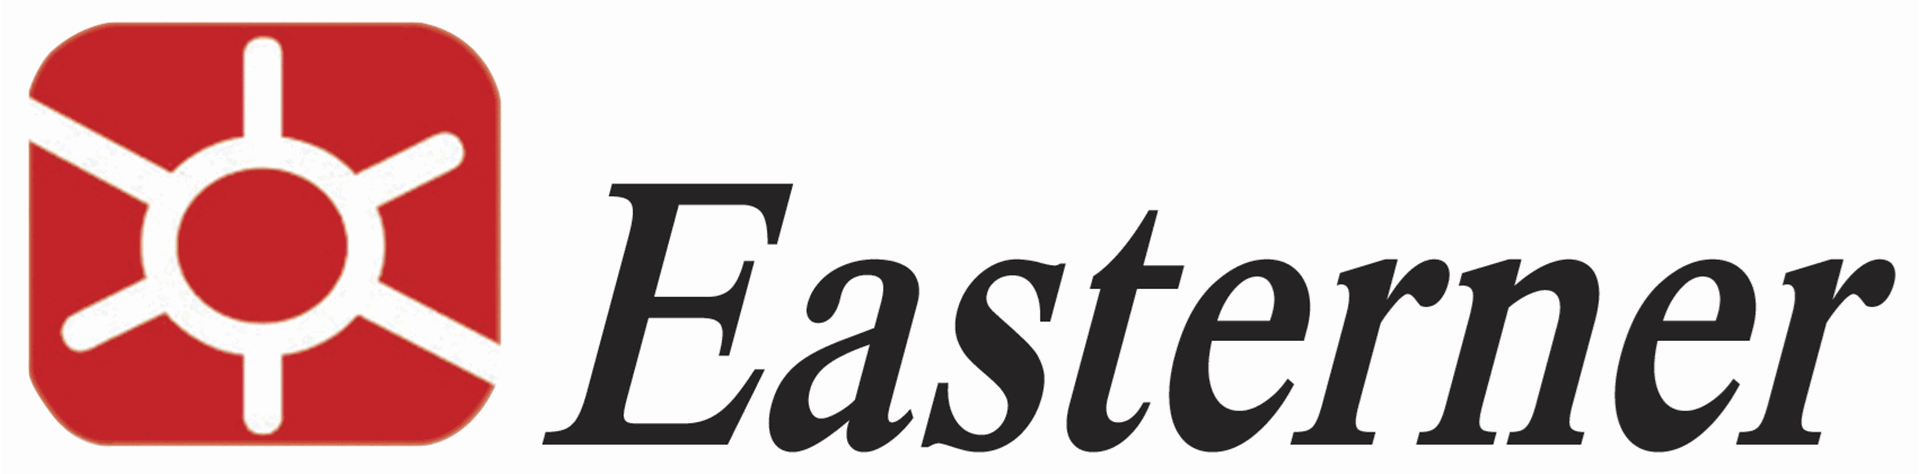 Logo Easterner #